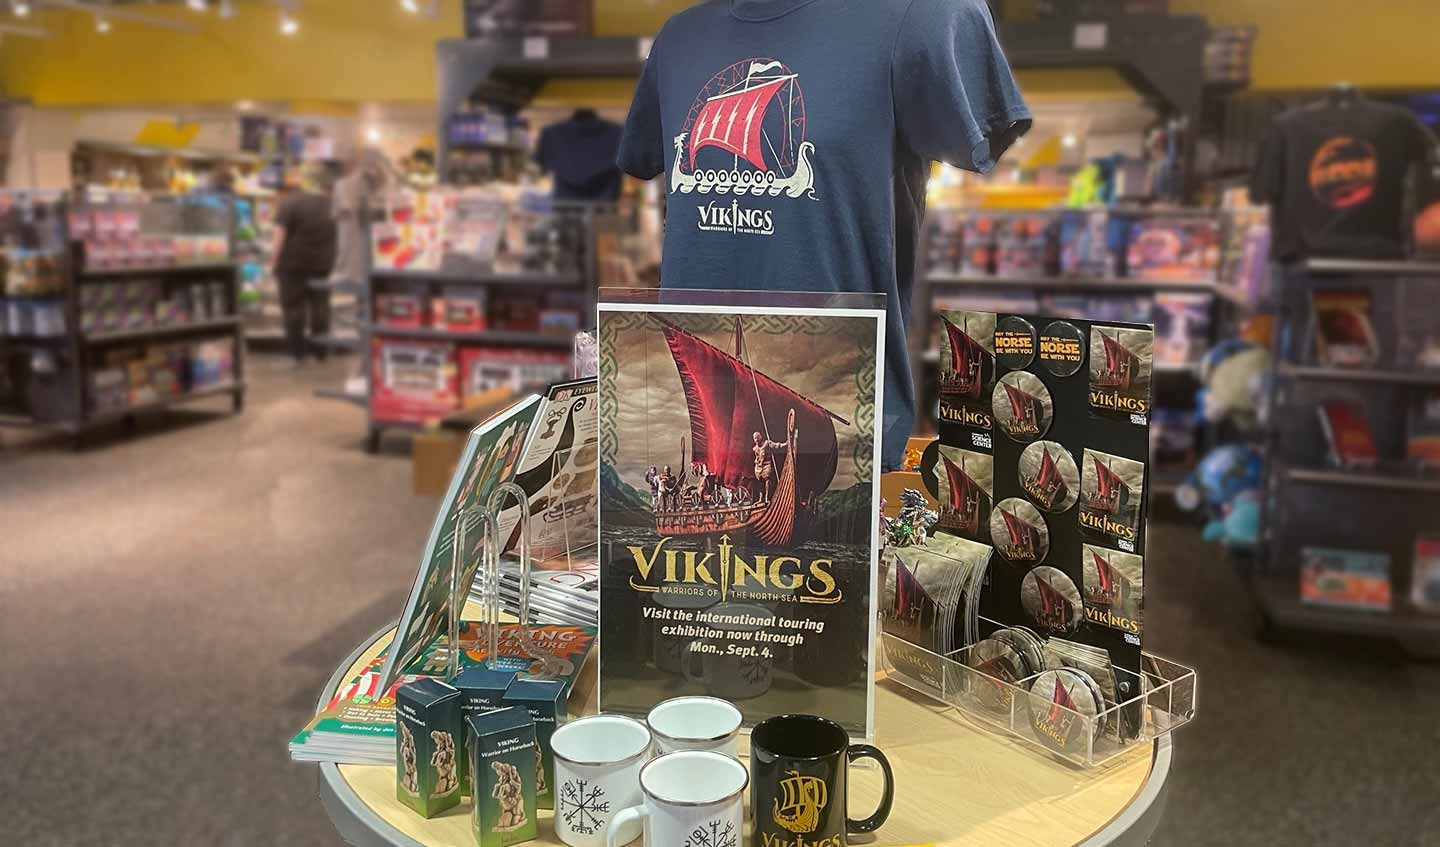 Vikings merchandise